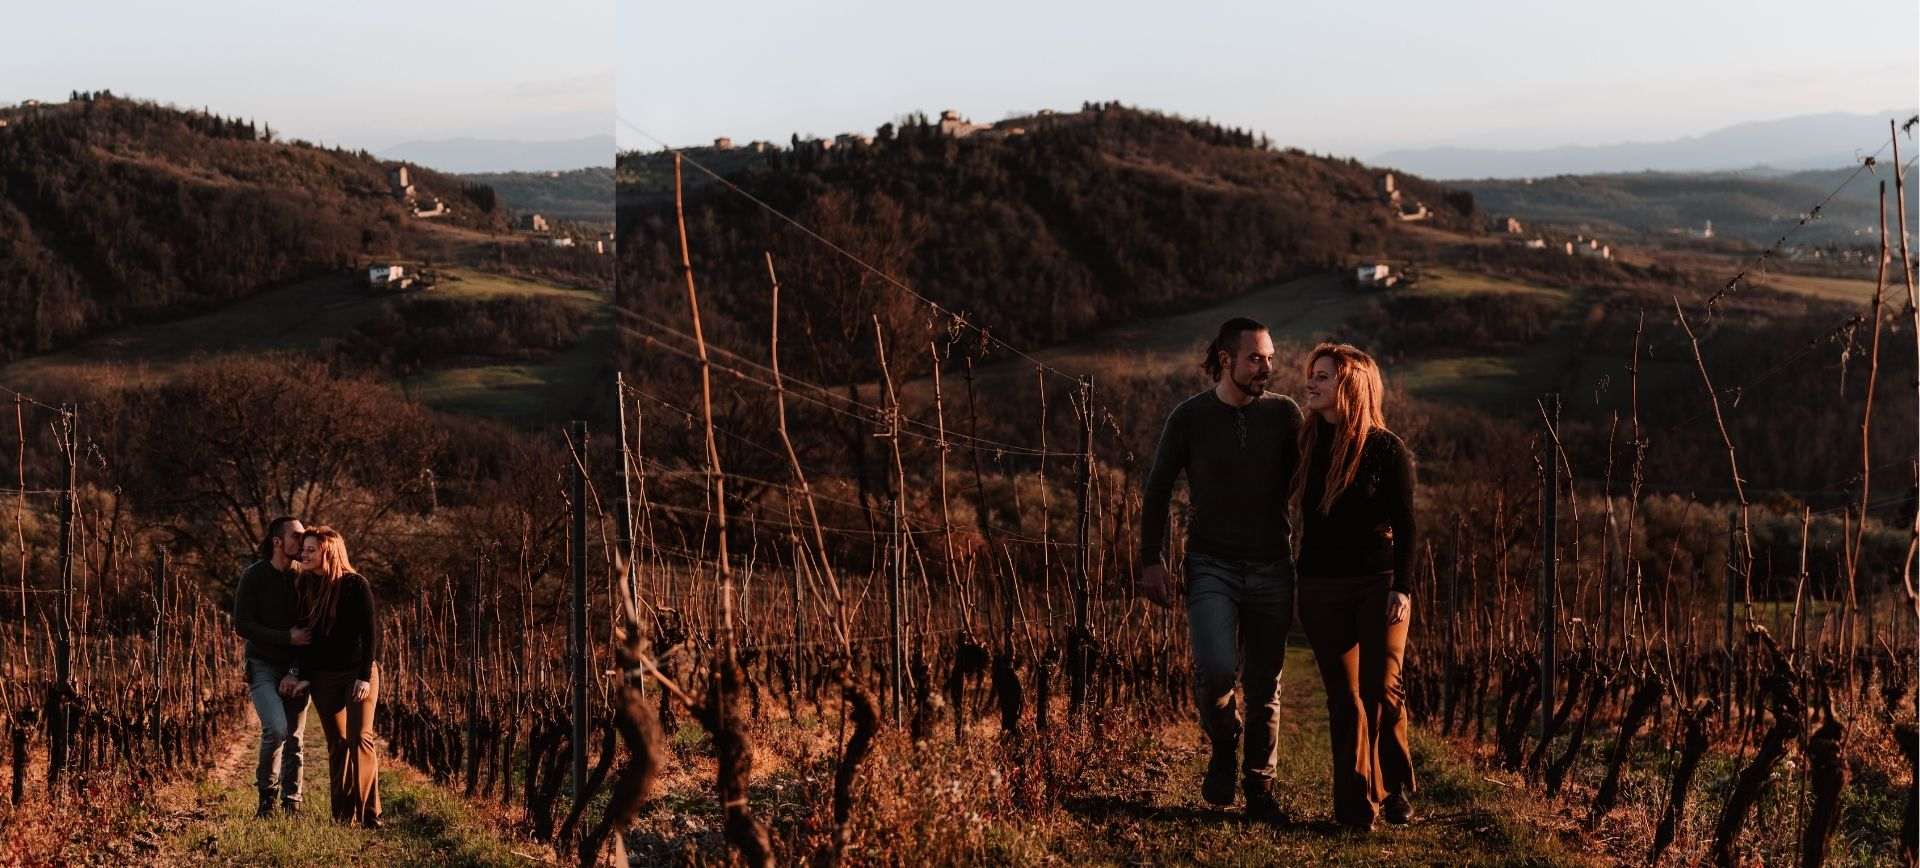 winery photoshoot near florence, tuscany